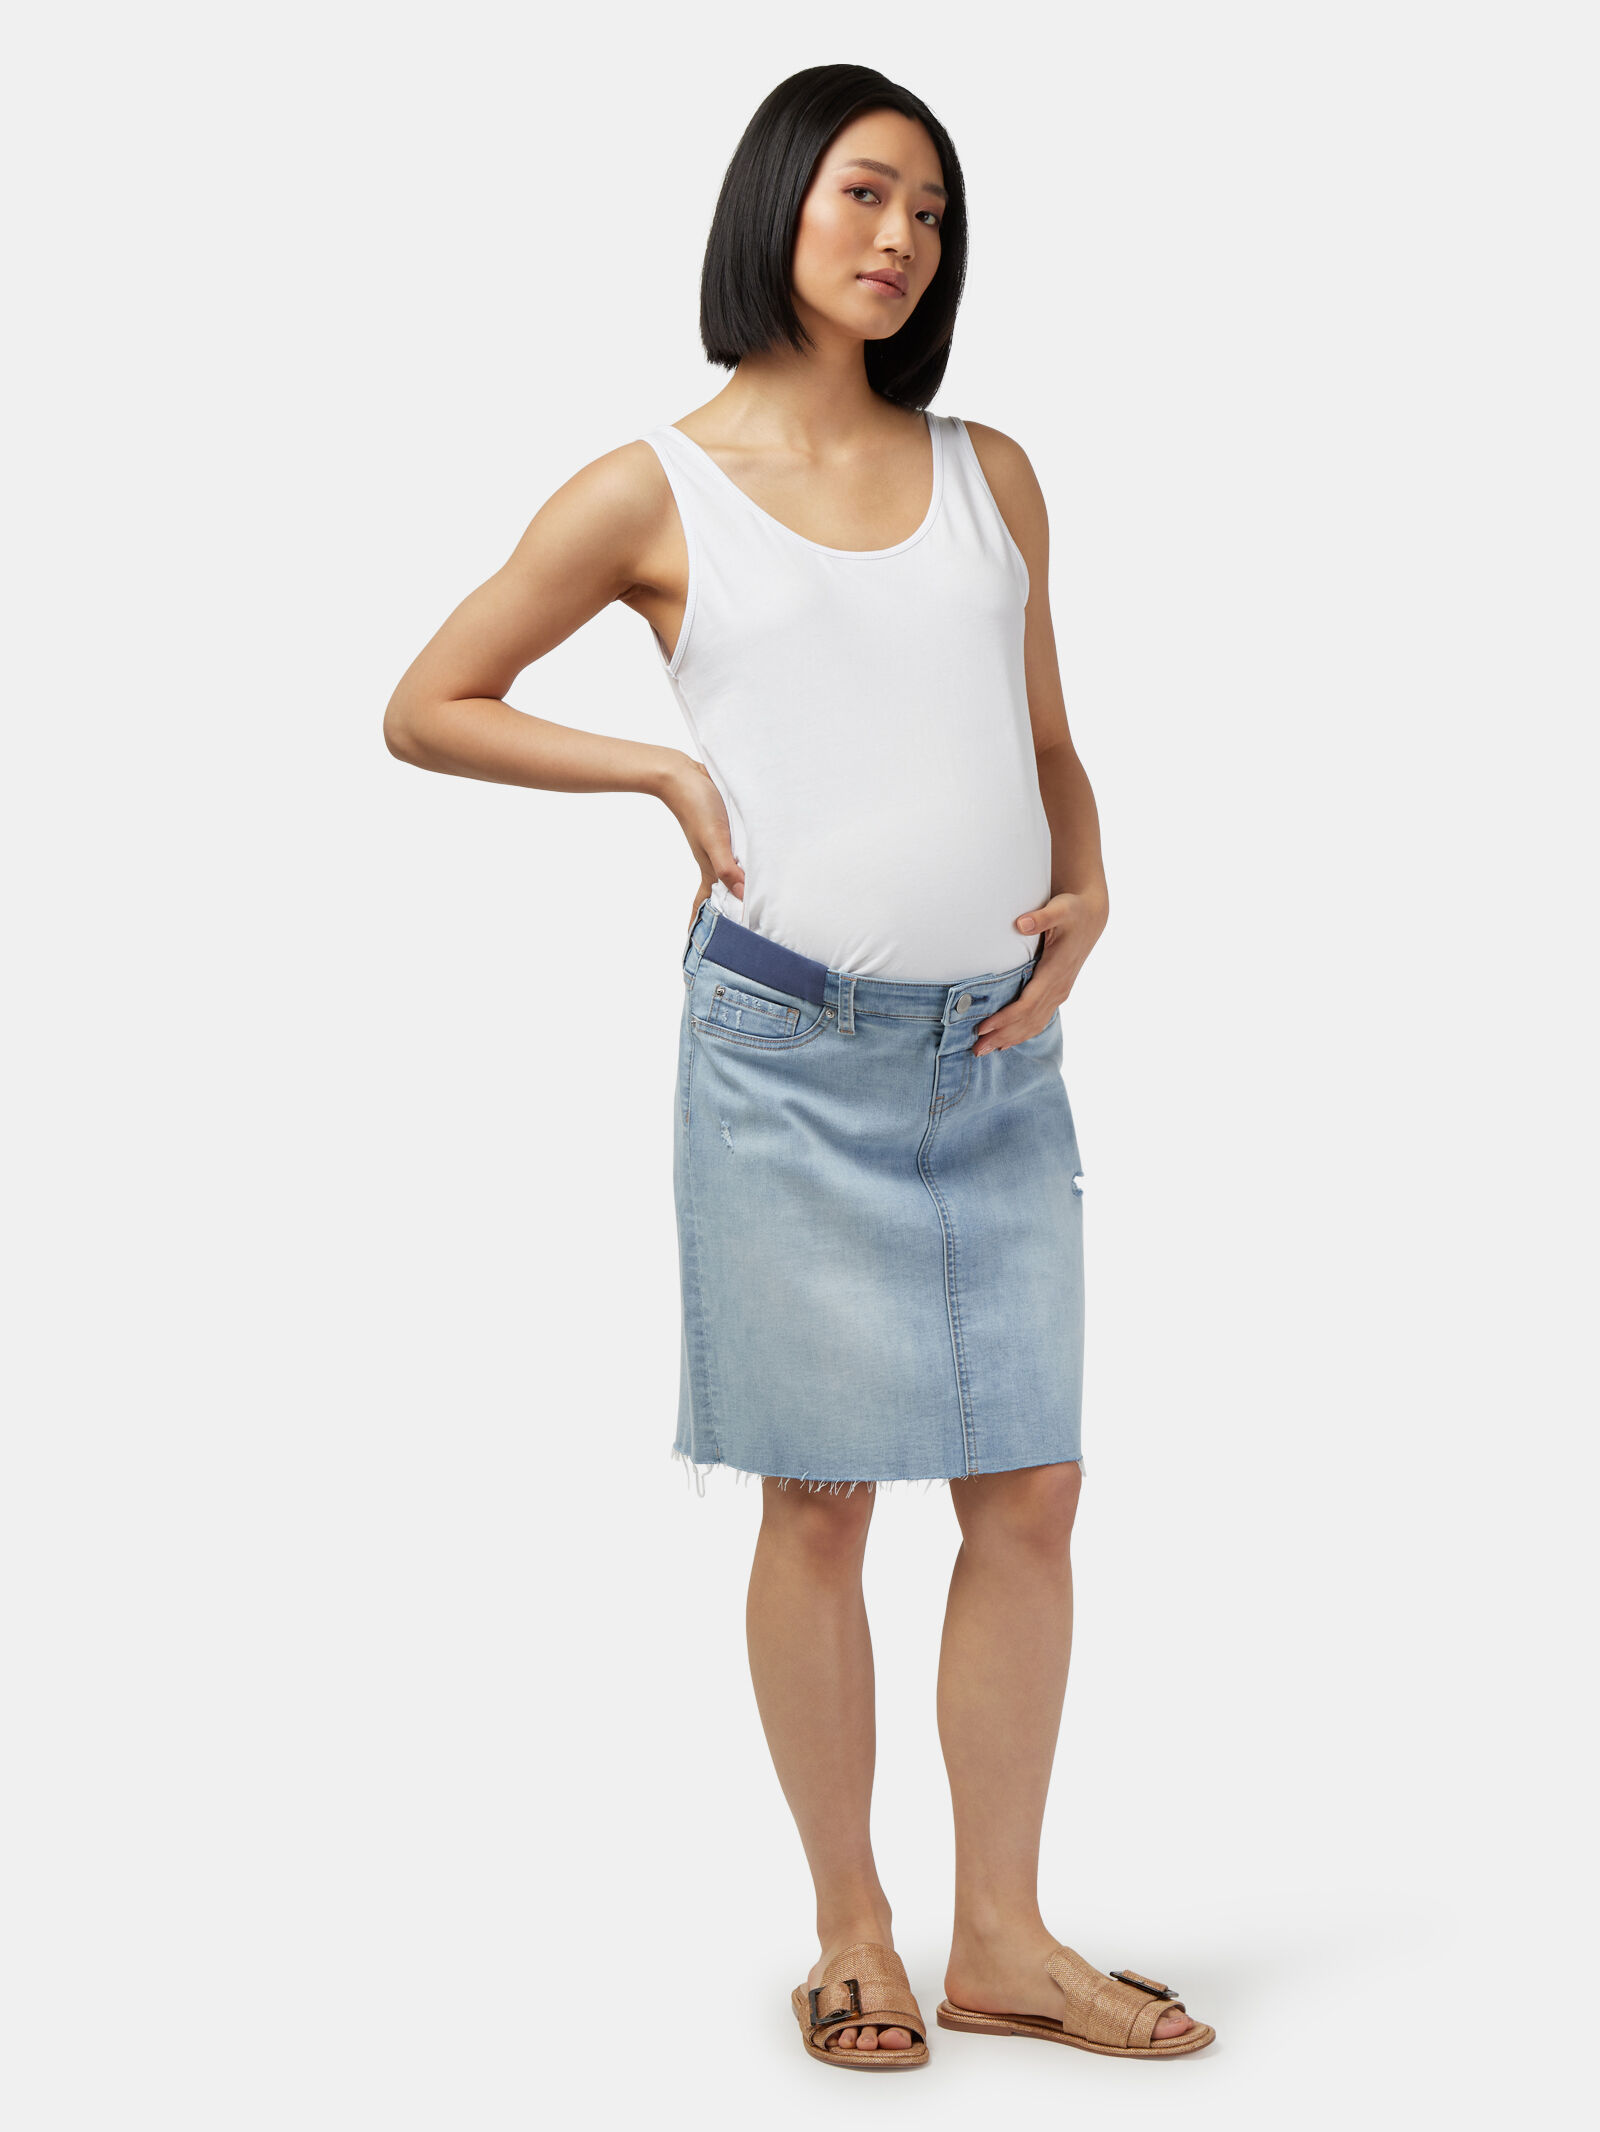 JUST JEANS WOMENS Blue Denim Jean Skirt Size 16 GC $30.00 - PicClick AU